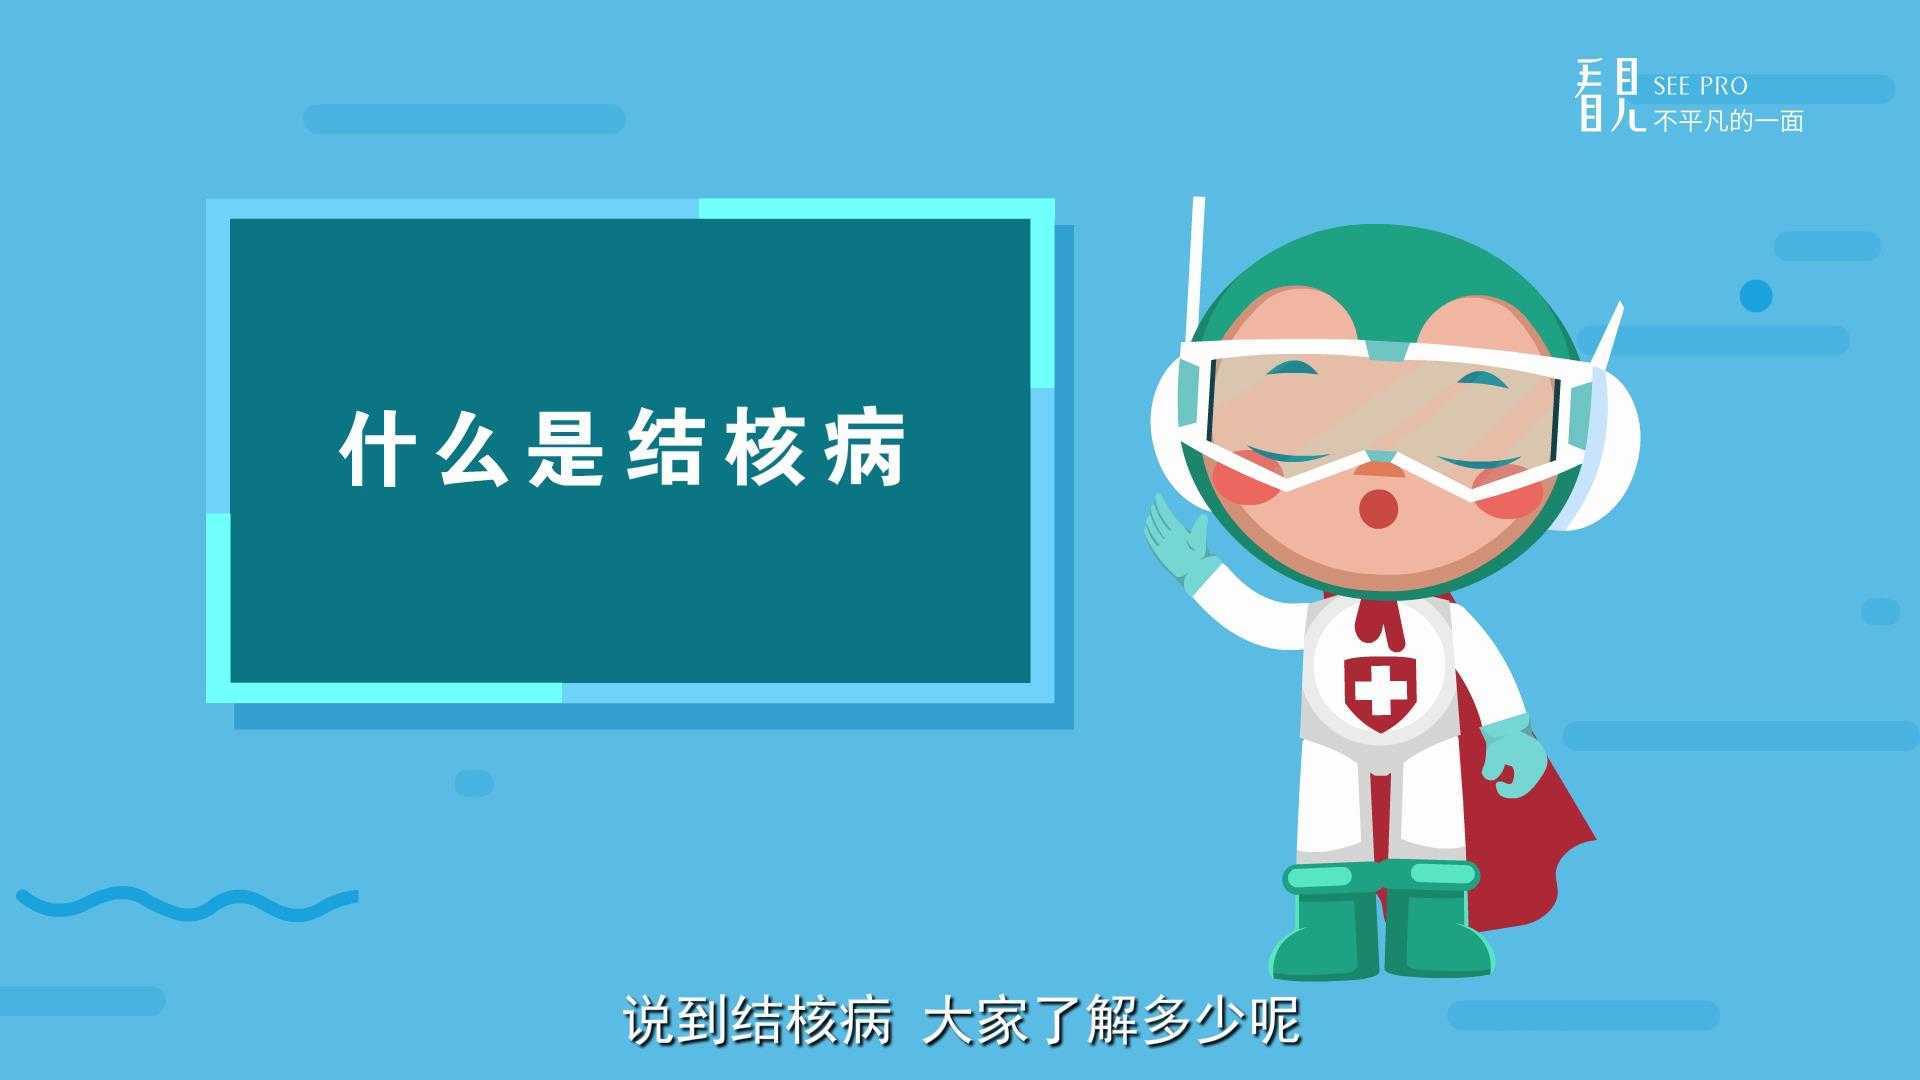 贵州看见文化传媒动画作品《贵阳市疾控中心的肺结核防治宣传动画》